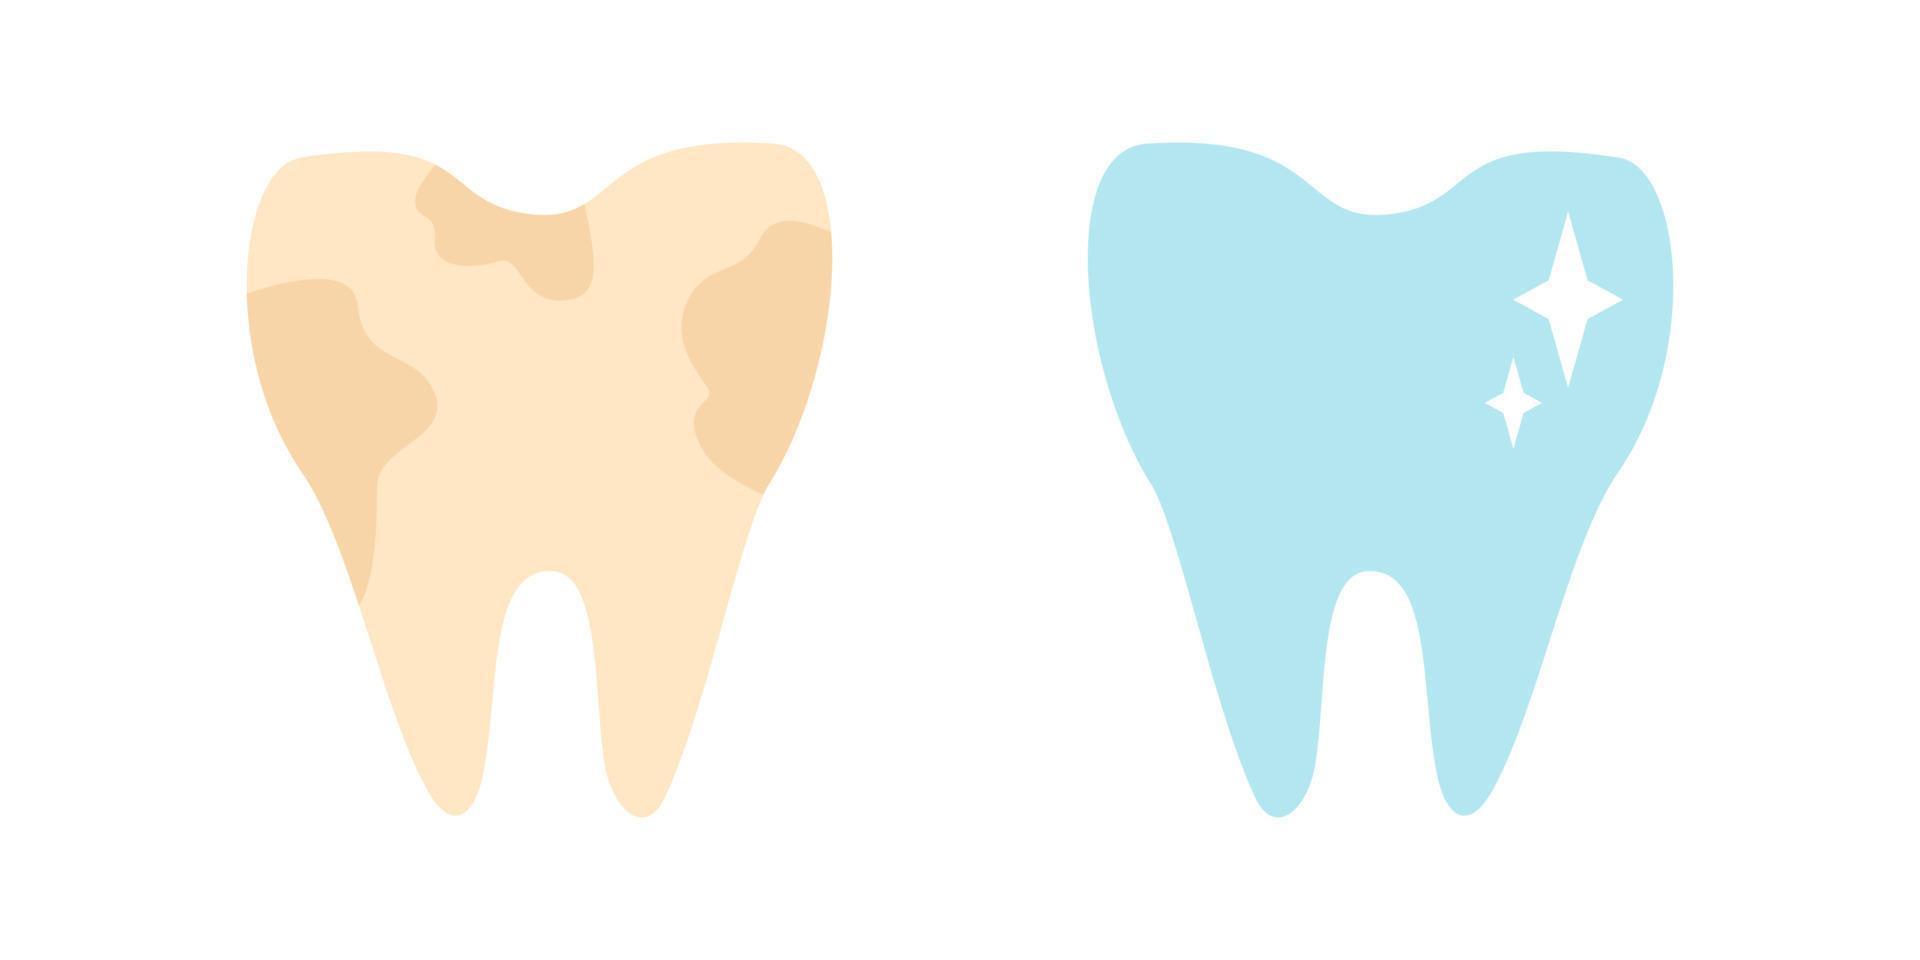 vecteur défini des icônes de dents sales et dent blanche. illustration vectorielle de la stomatologie des dents.